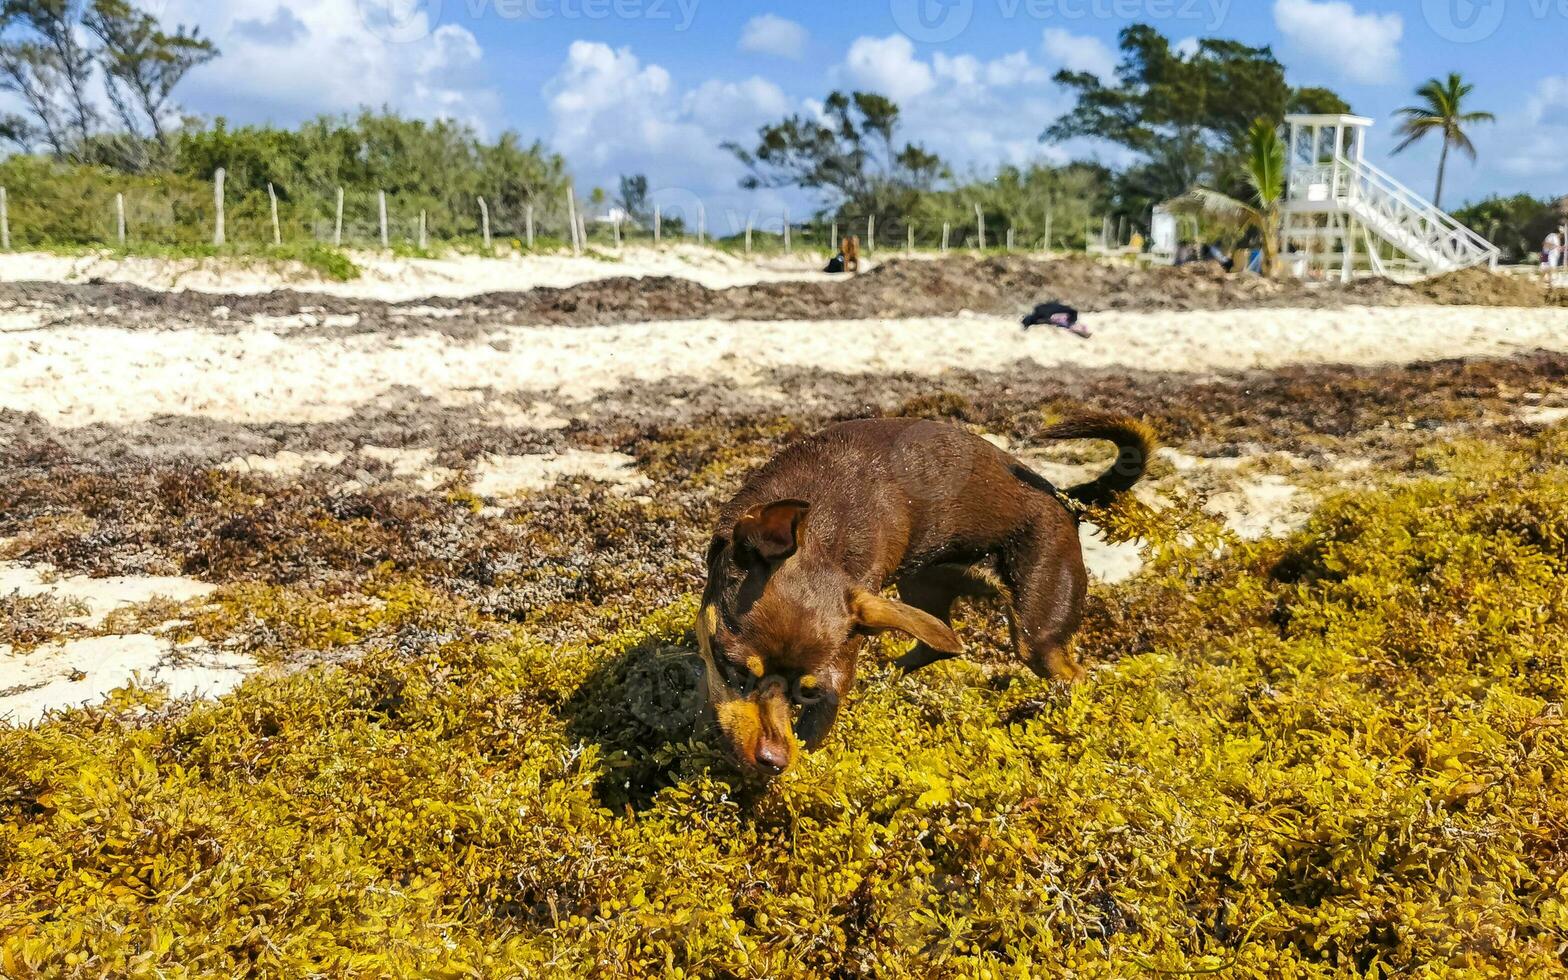 chien drôle mignon marron jouer ludique sur la plage mexique. photo